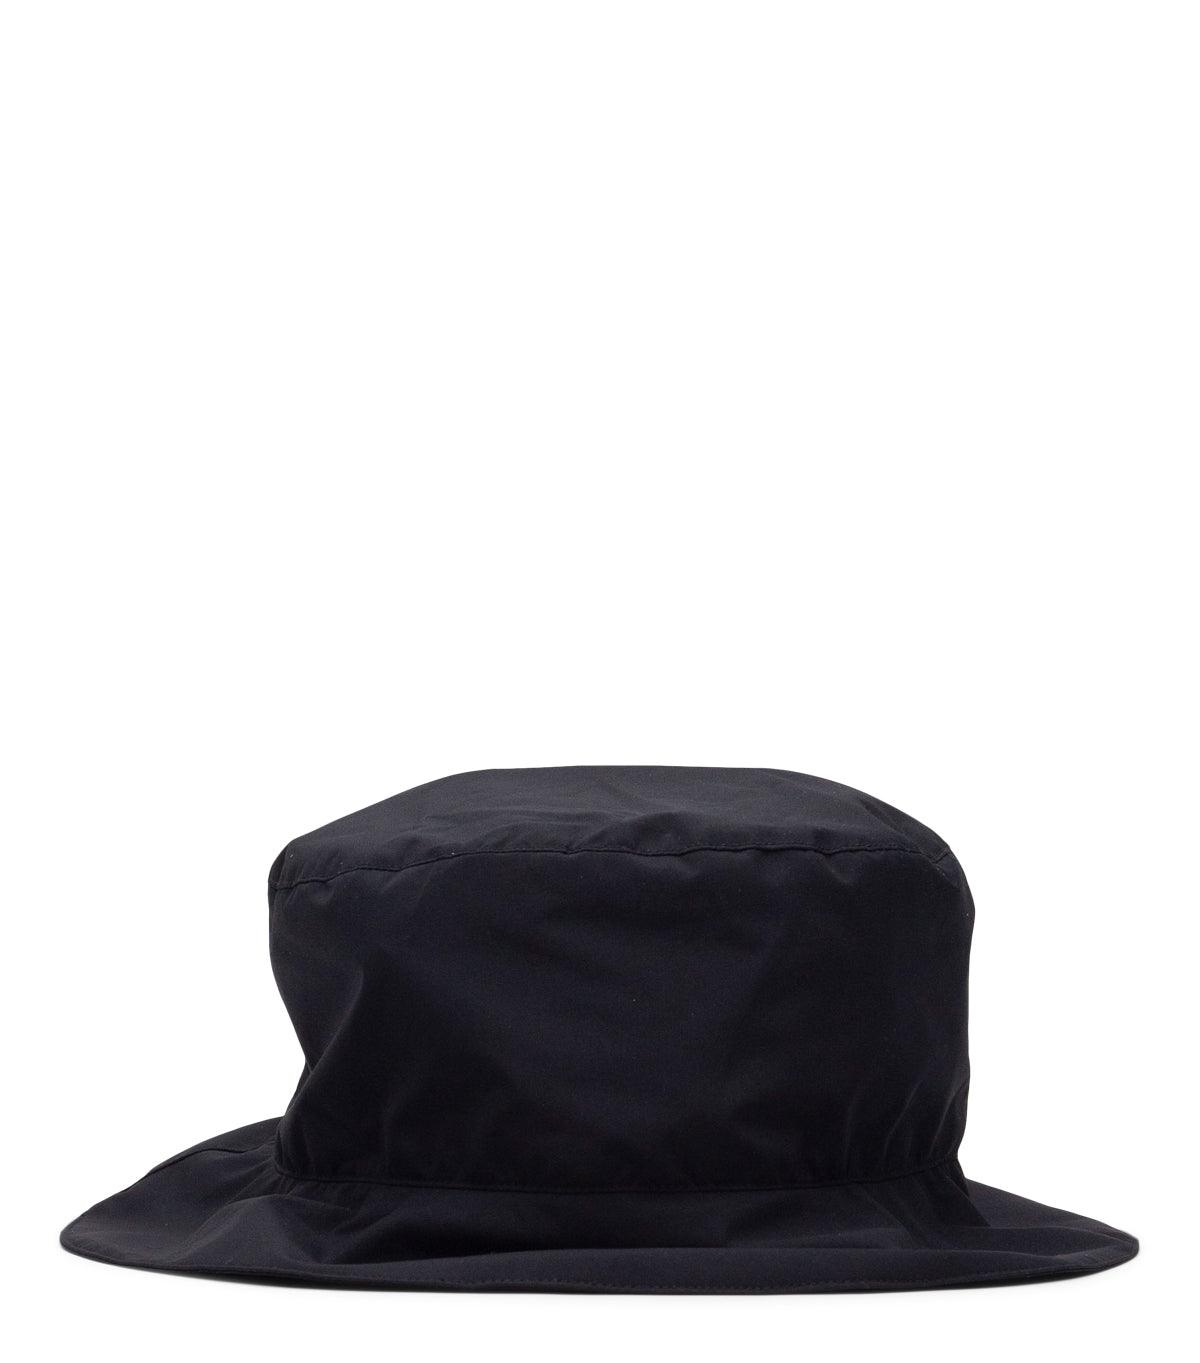 Acronym FC3-WS Hat Black